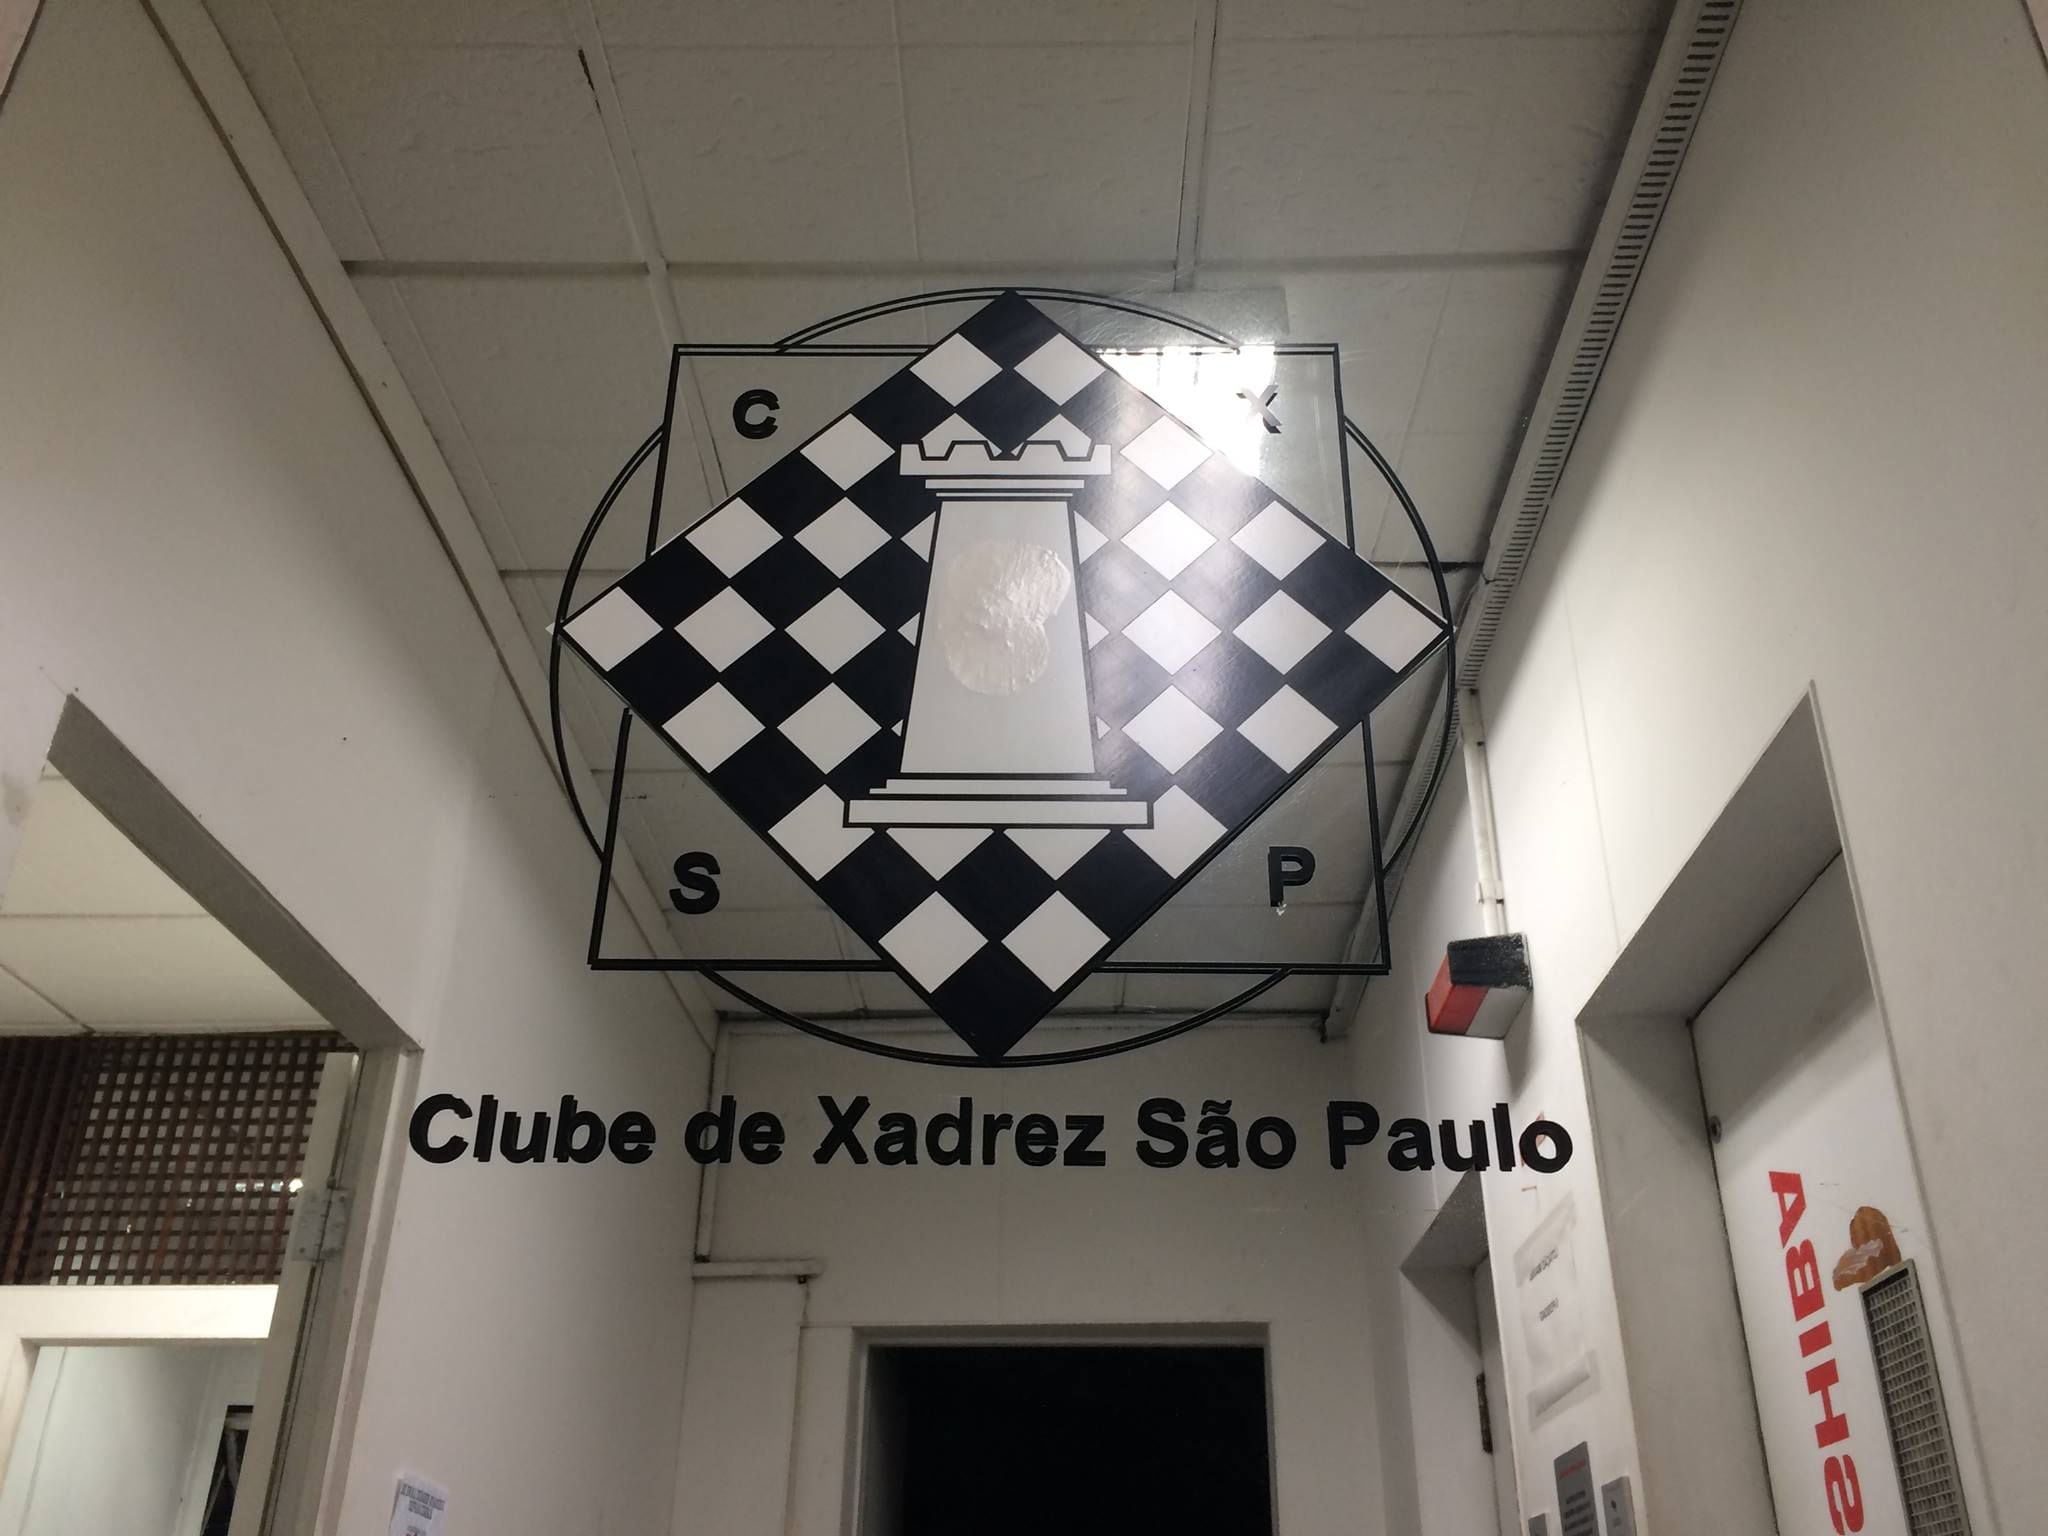 Conheça o Clube de Xadrez São Paulo, o mais antigo do País e local